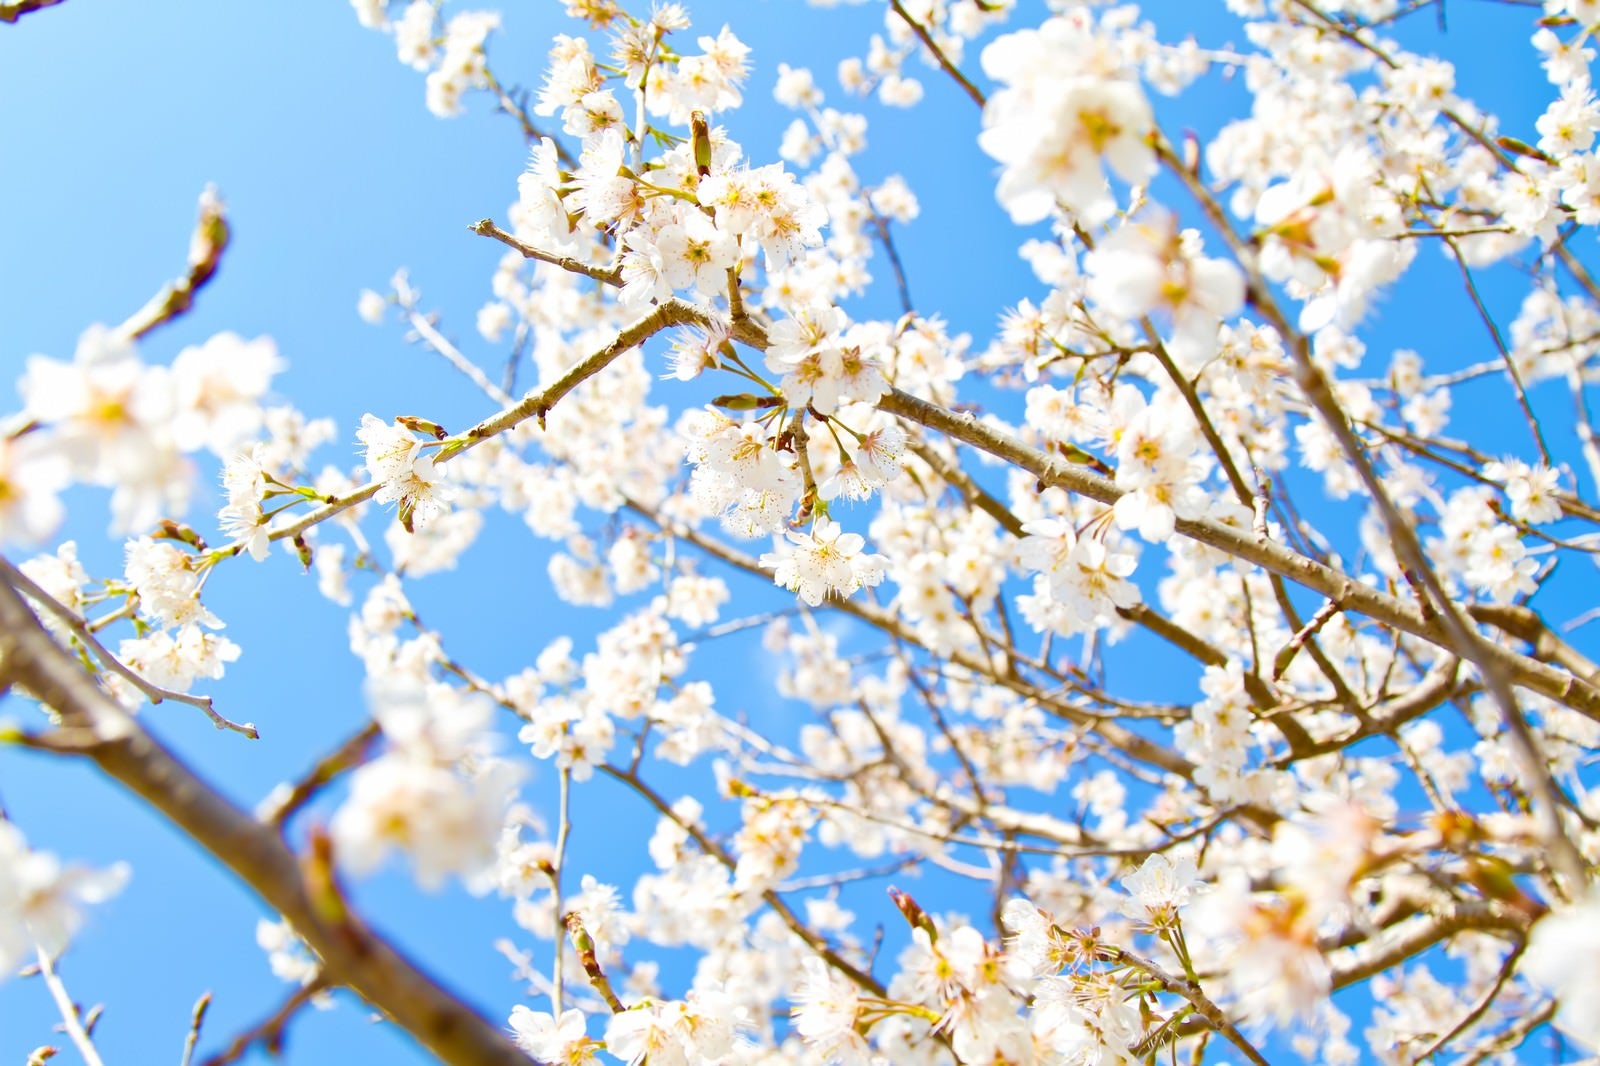 「青空と白い桜」の写真